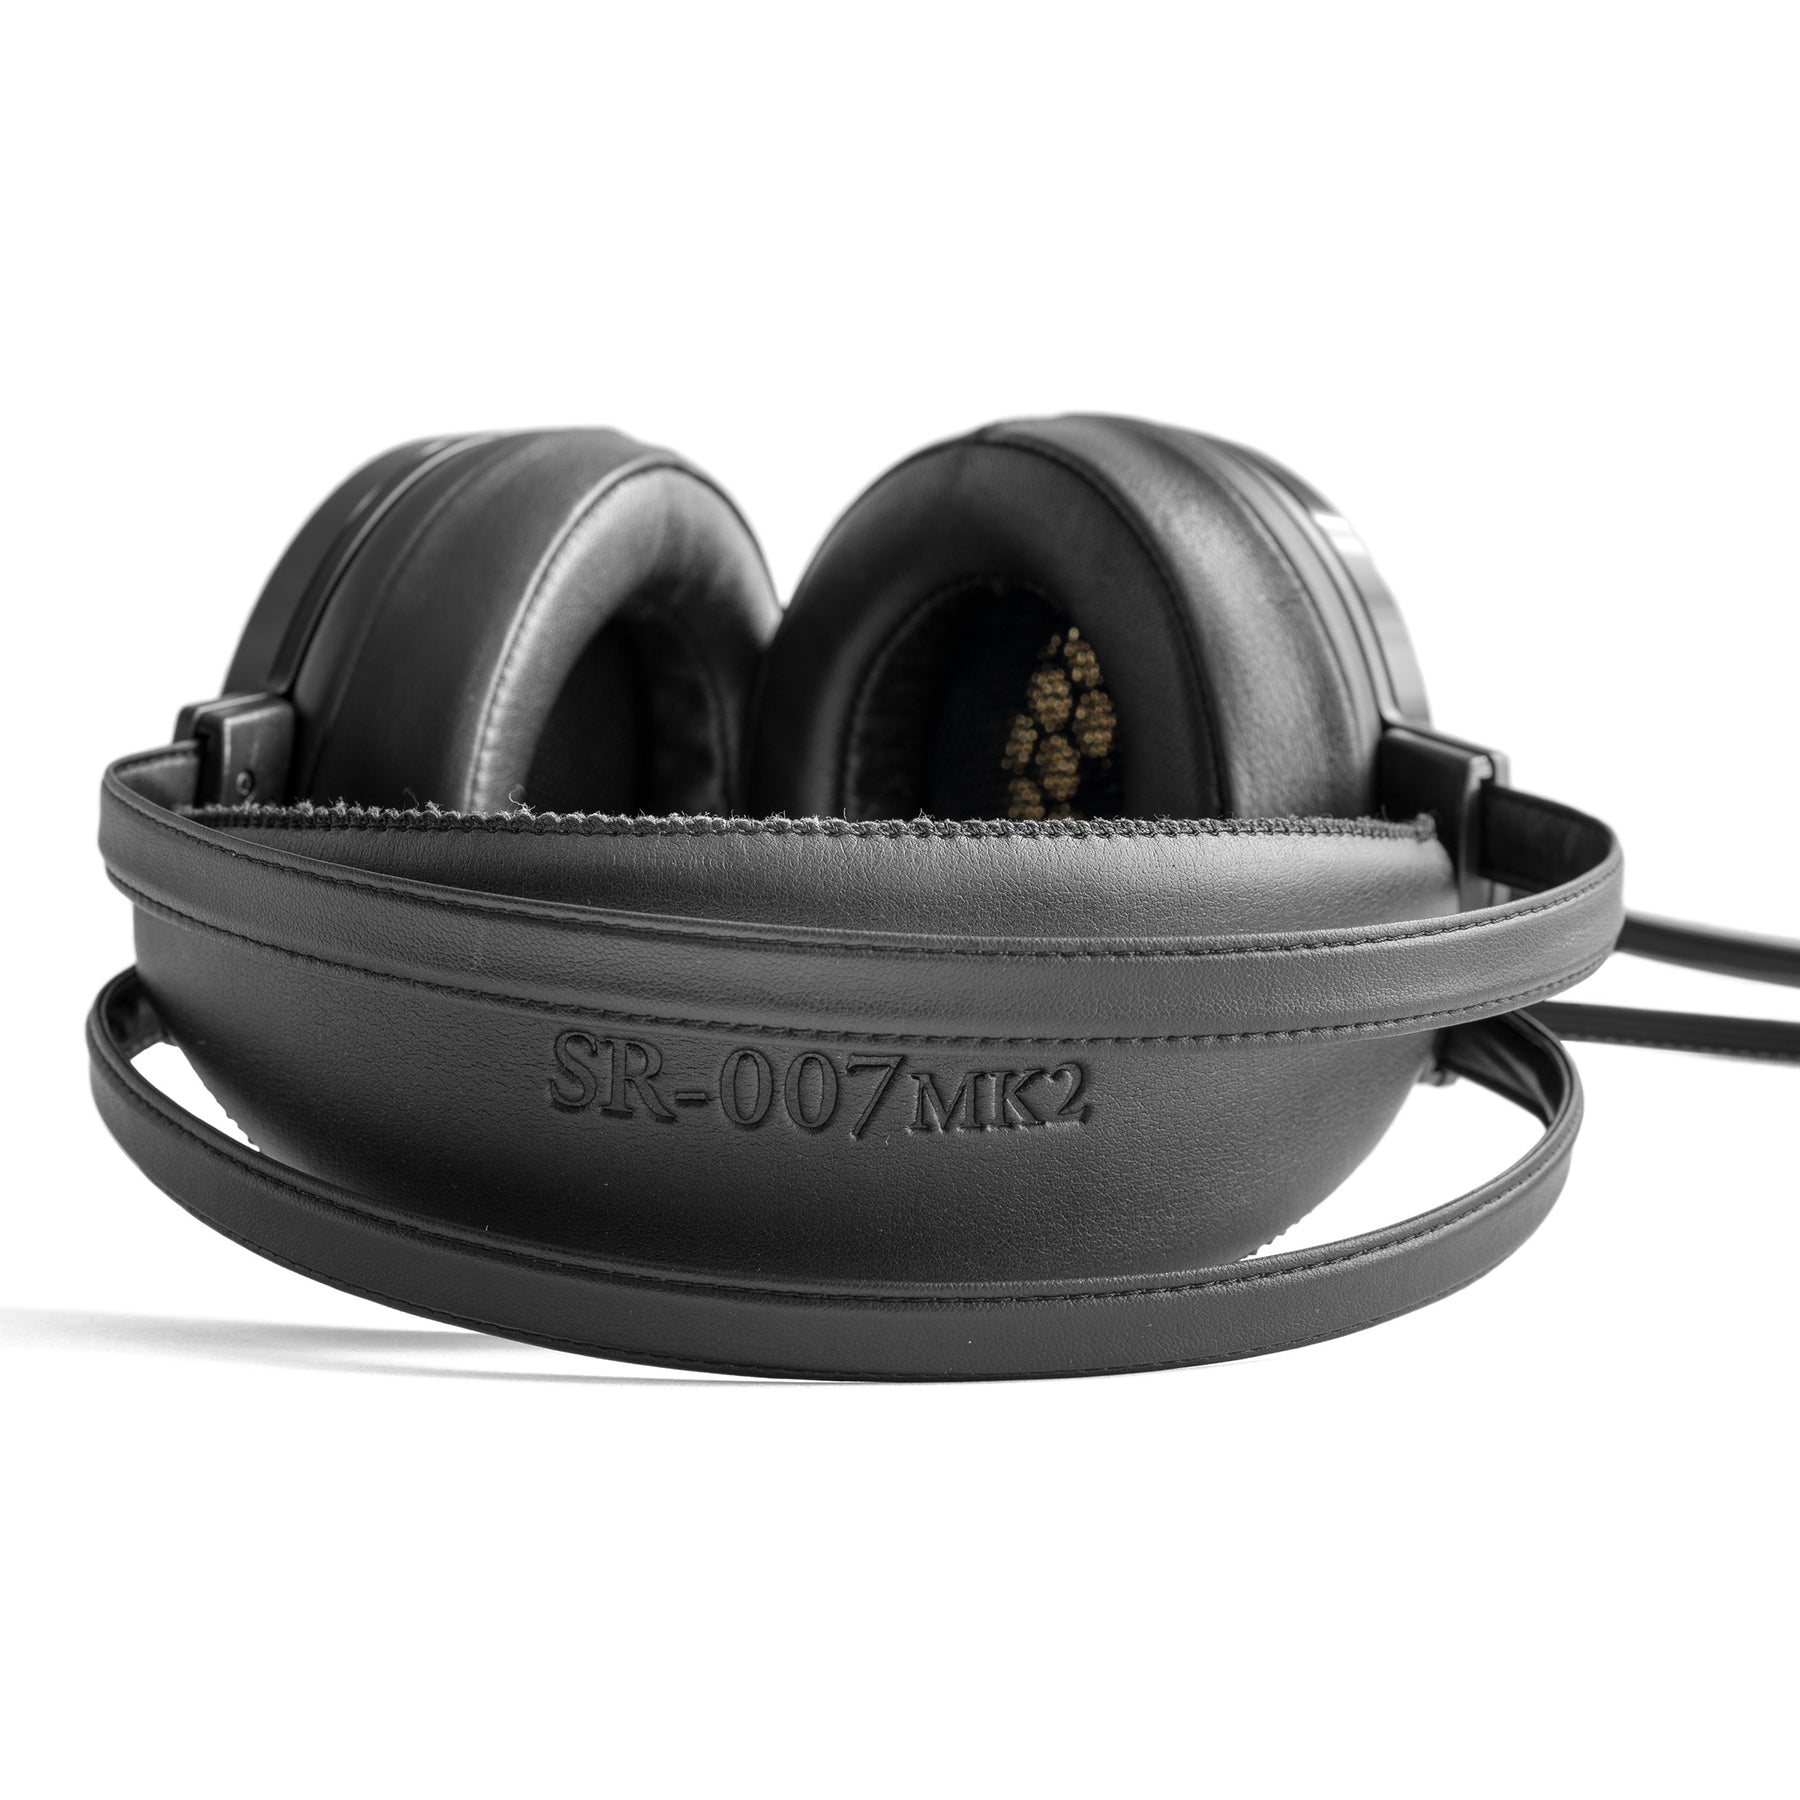 Stax SR-007MK2 Reference Earspeaker